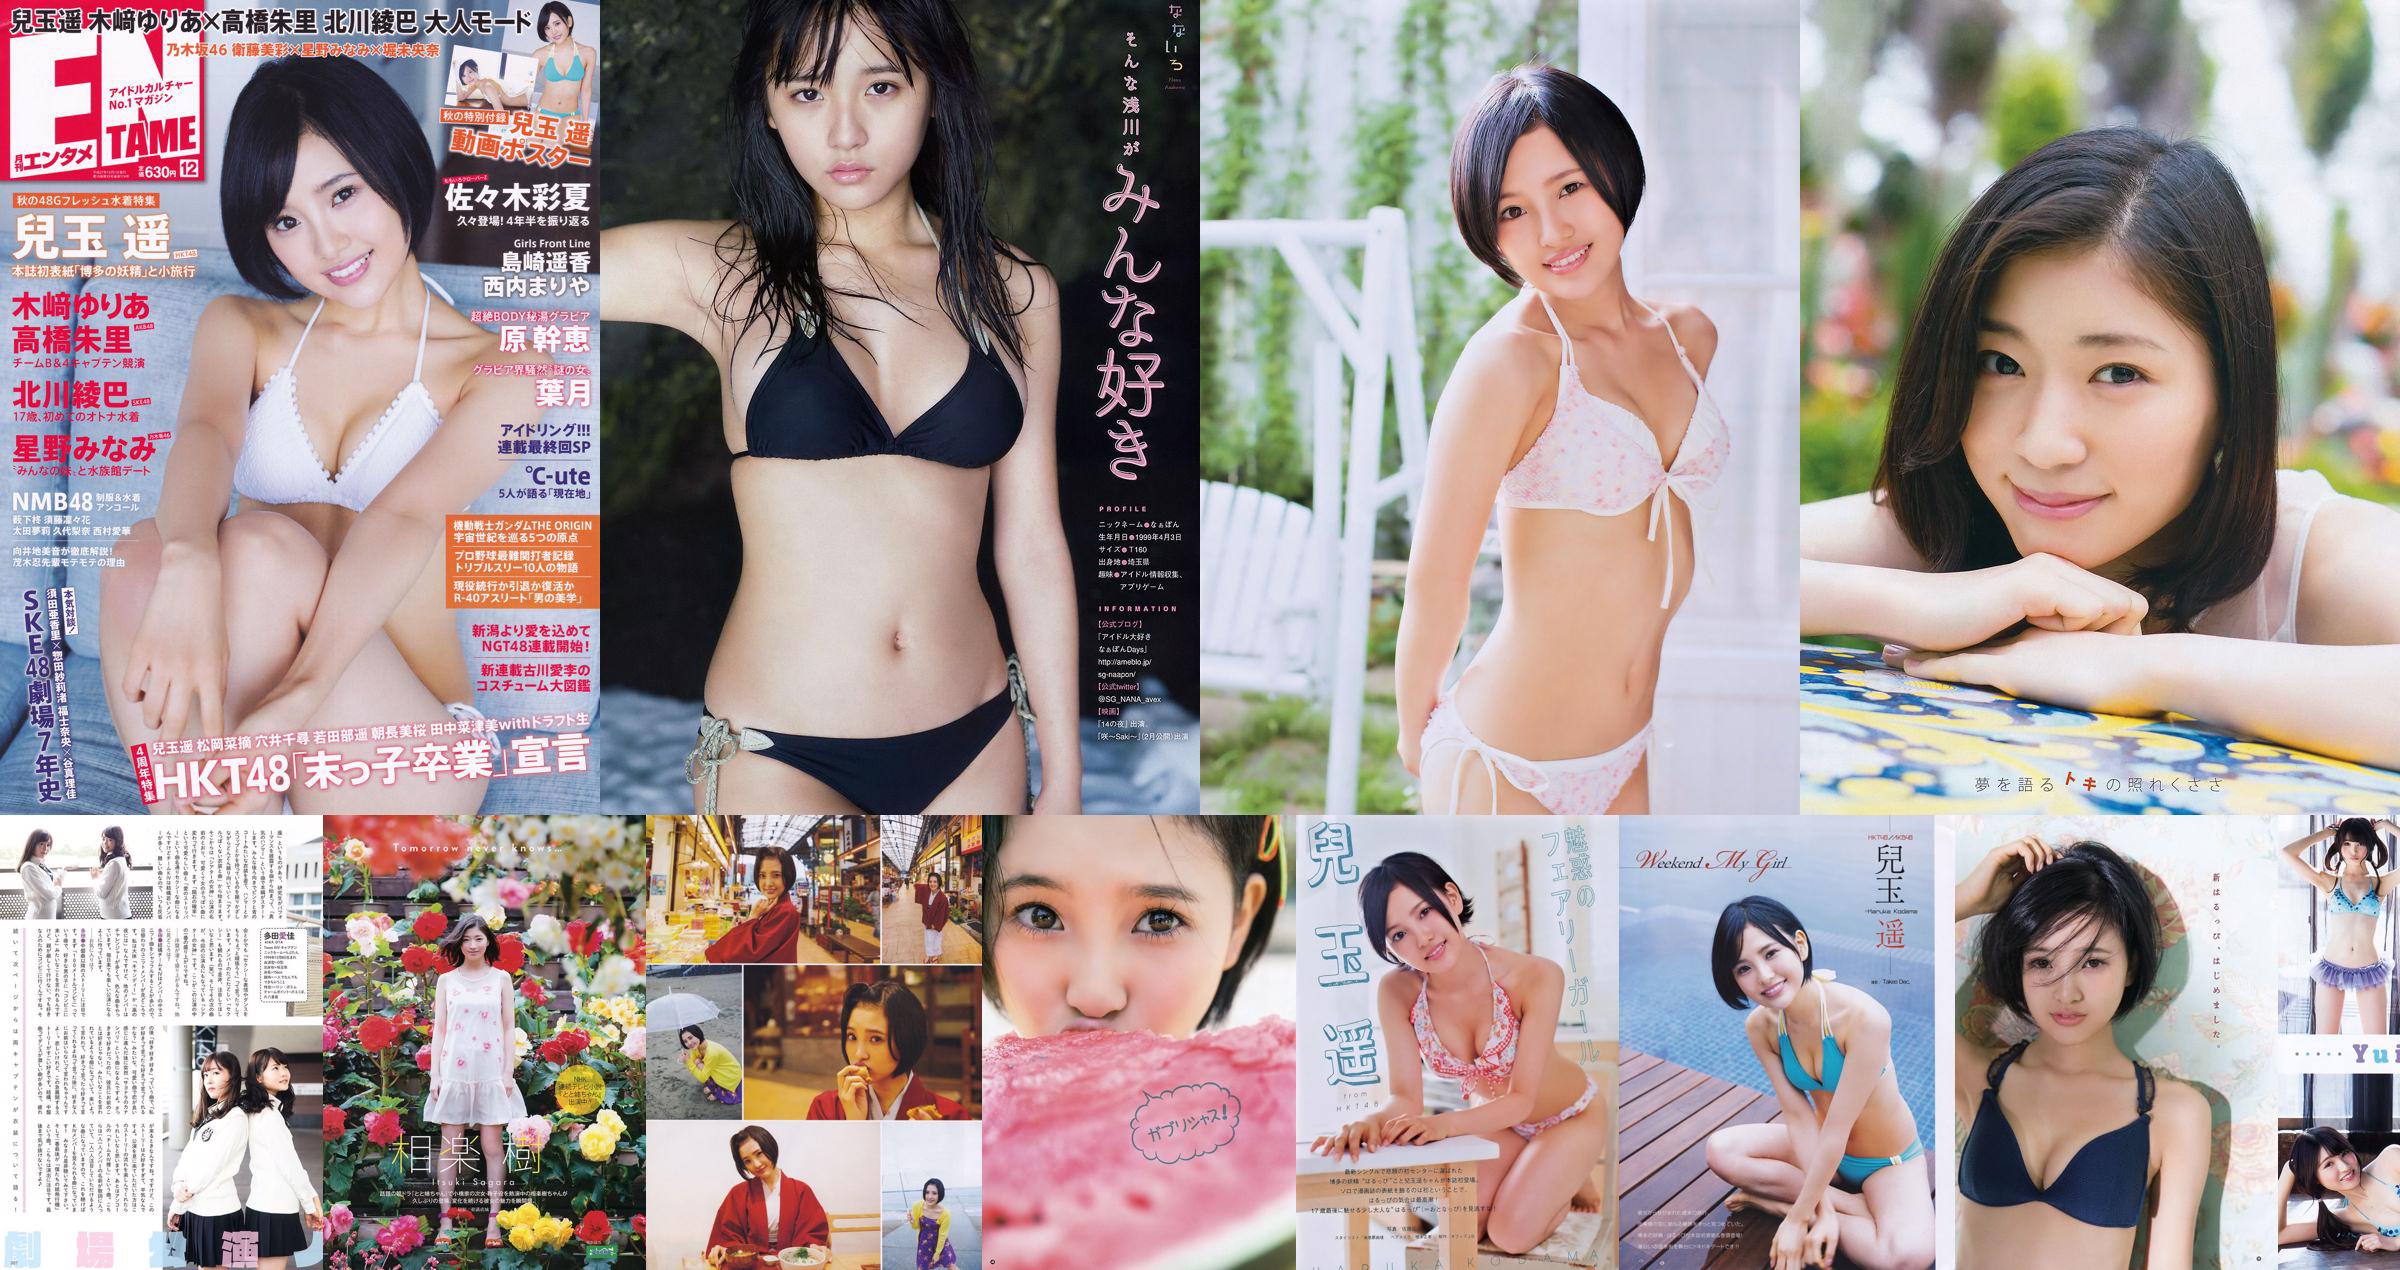 [Young Gangan] Haruka Kodama Itsuki Sagara 2016 No.11 Photo Magazine No.1623fe Page 1